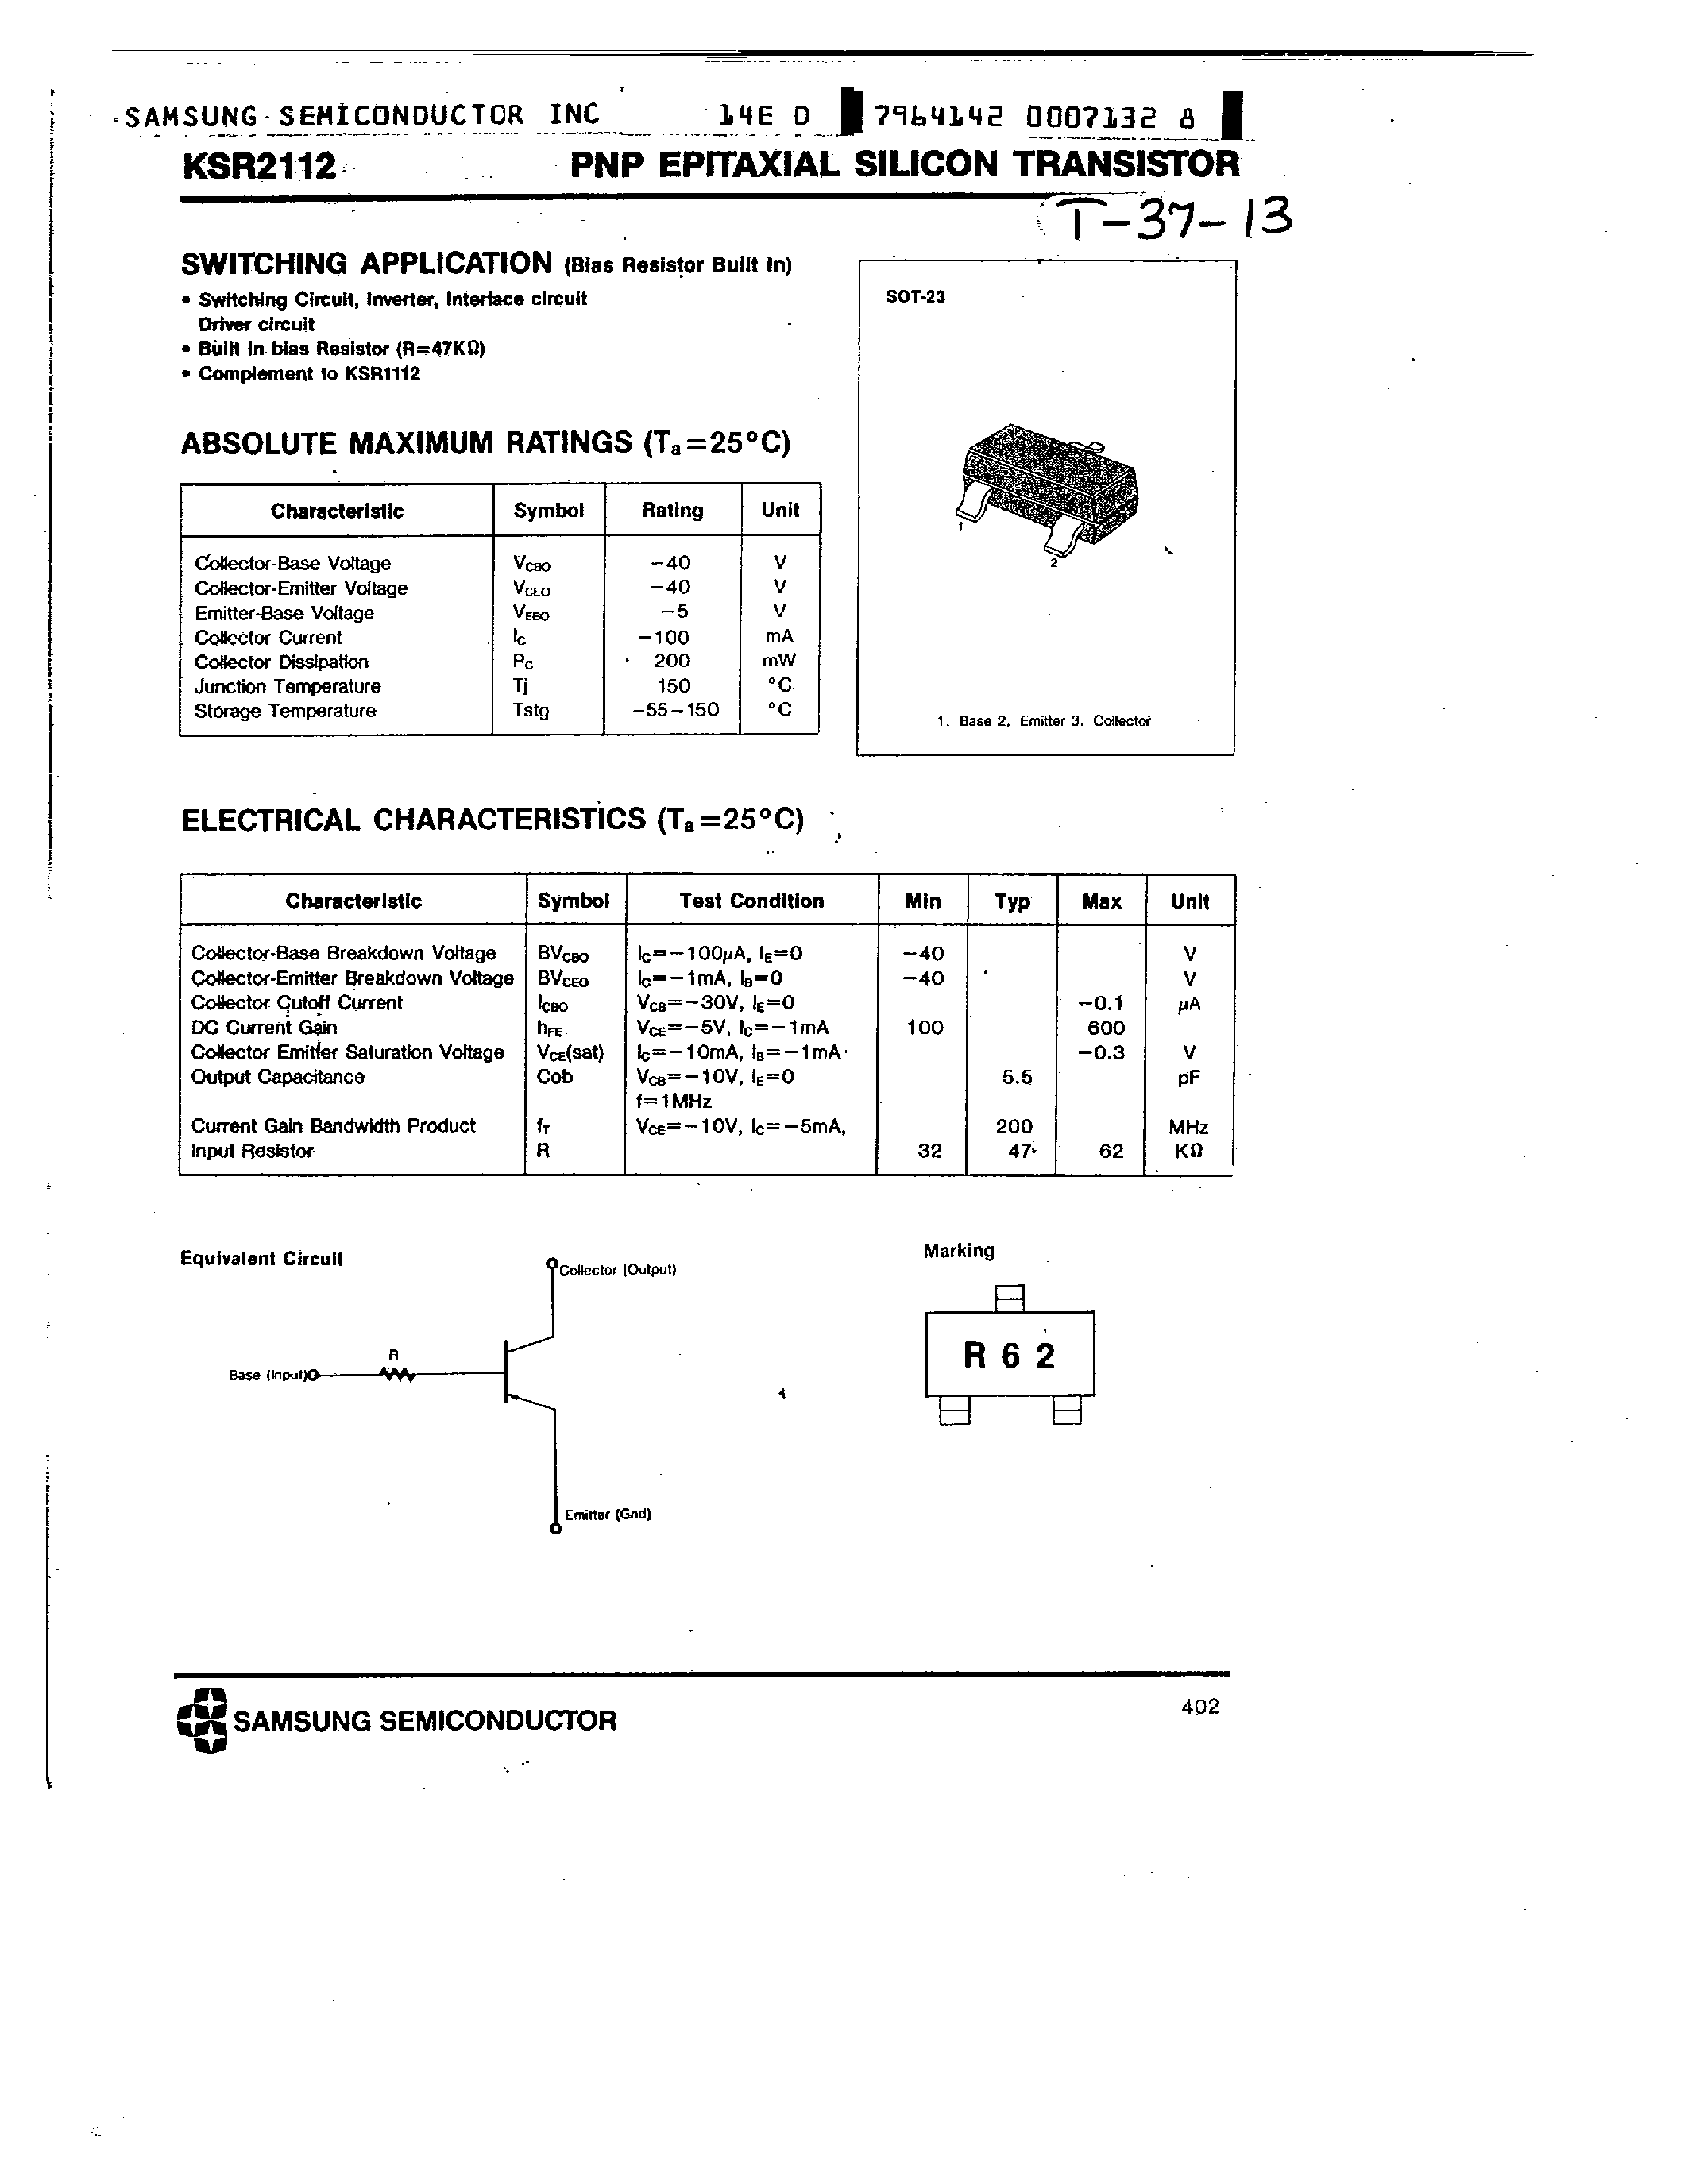 Datasheet KSR2112 - PNP (SWITCHING APPLICATION) page 1